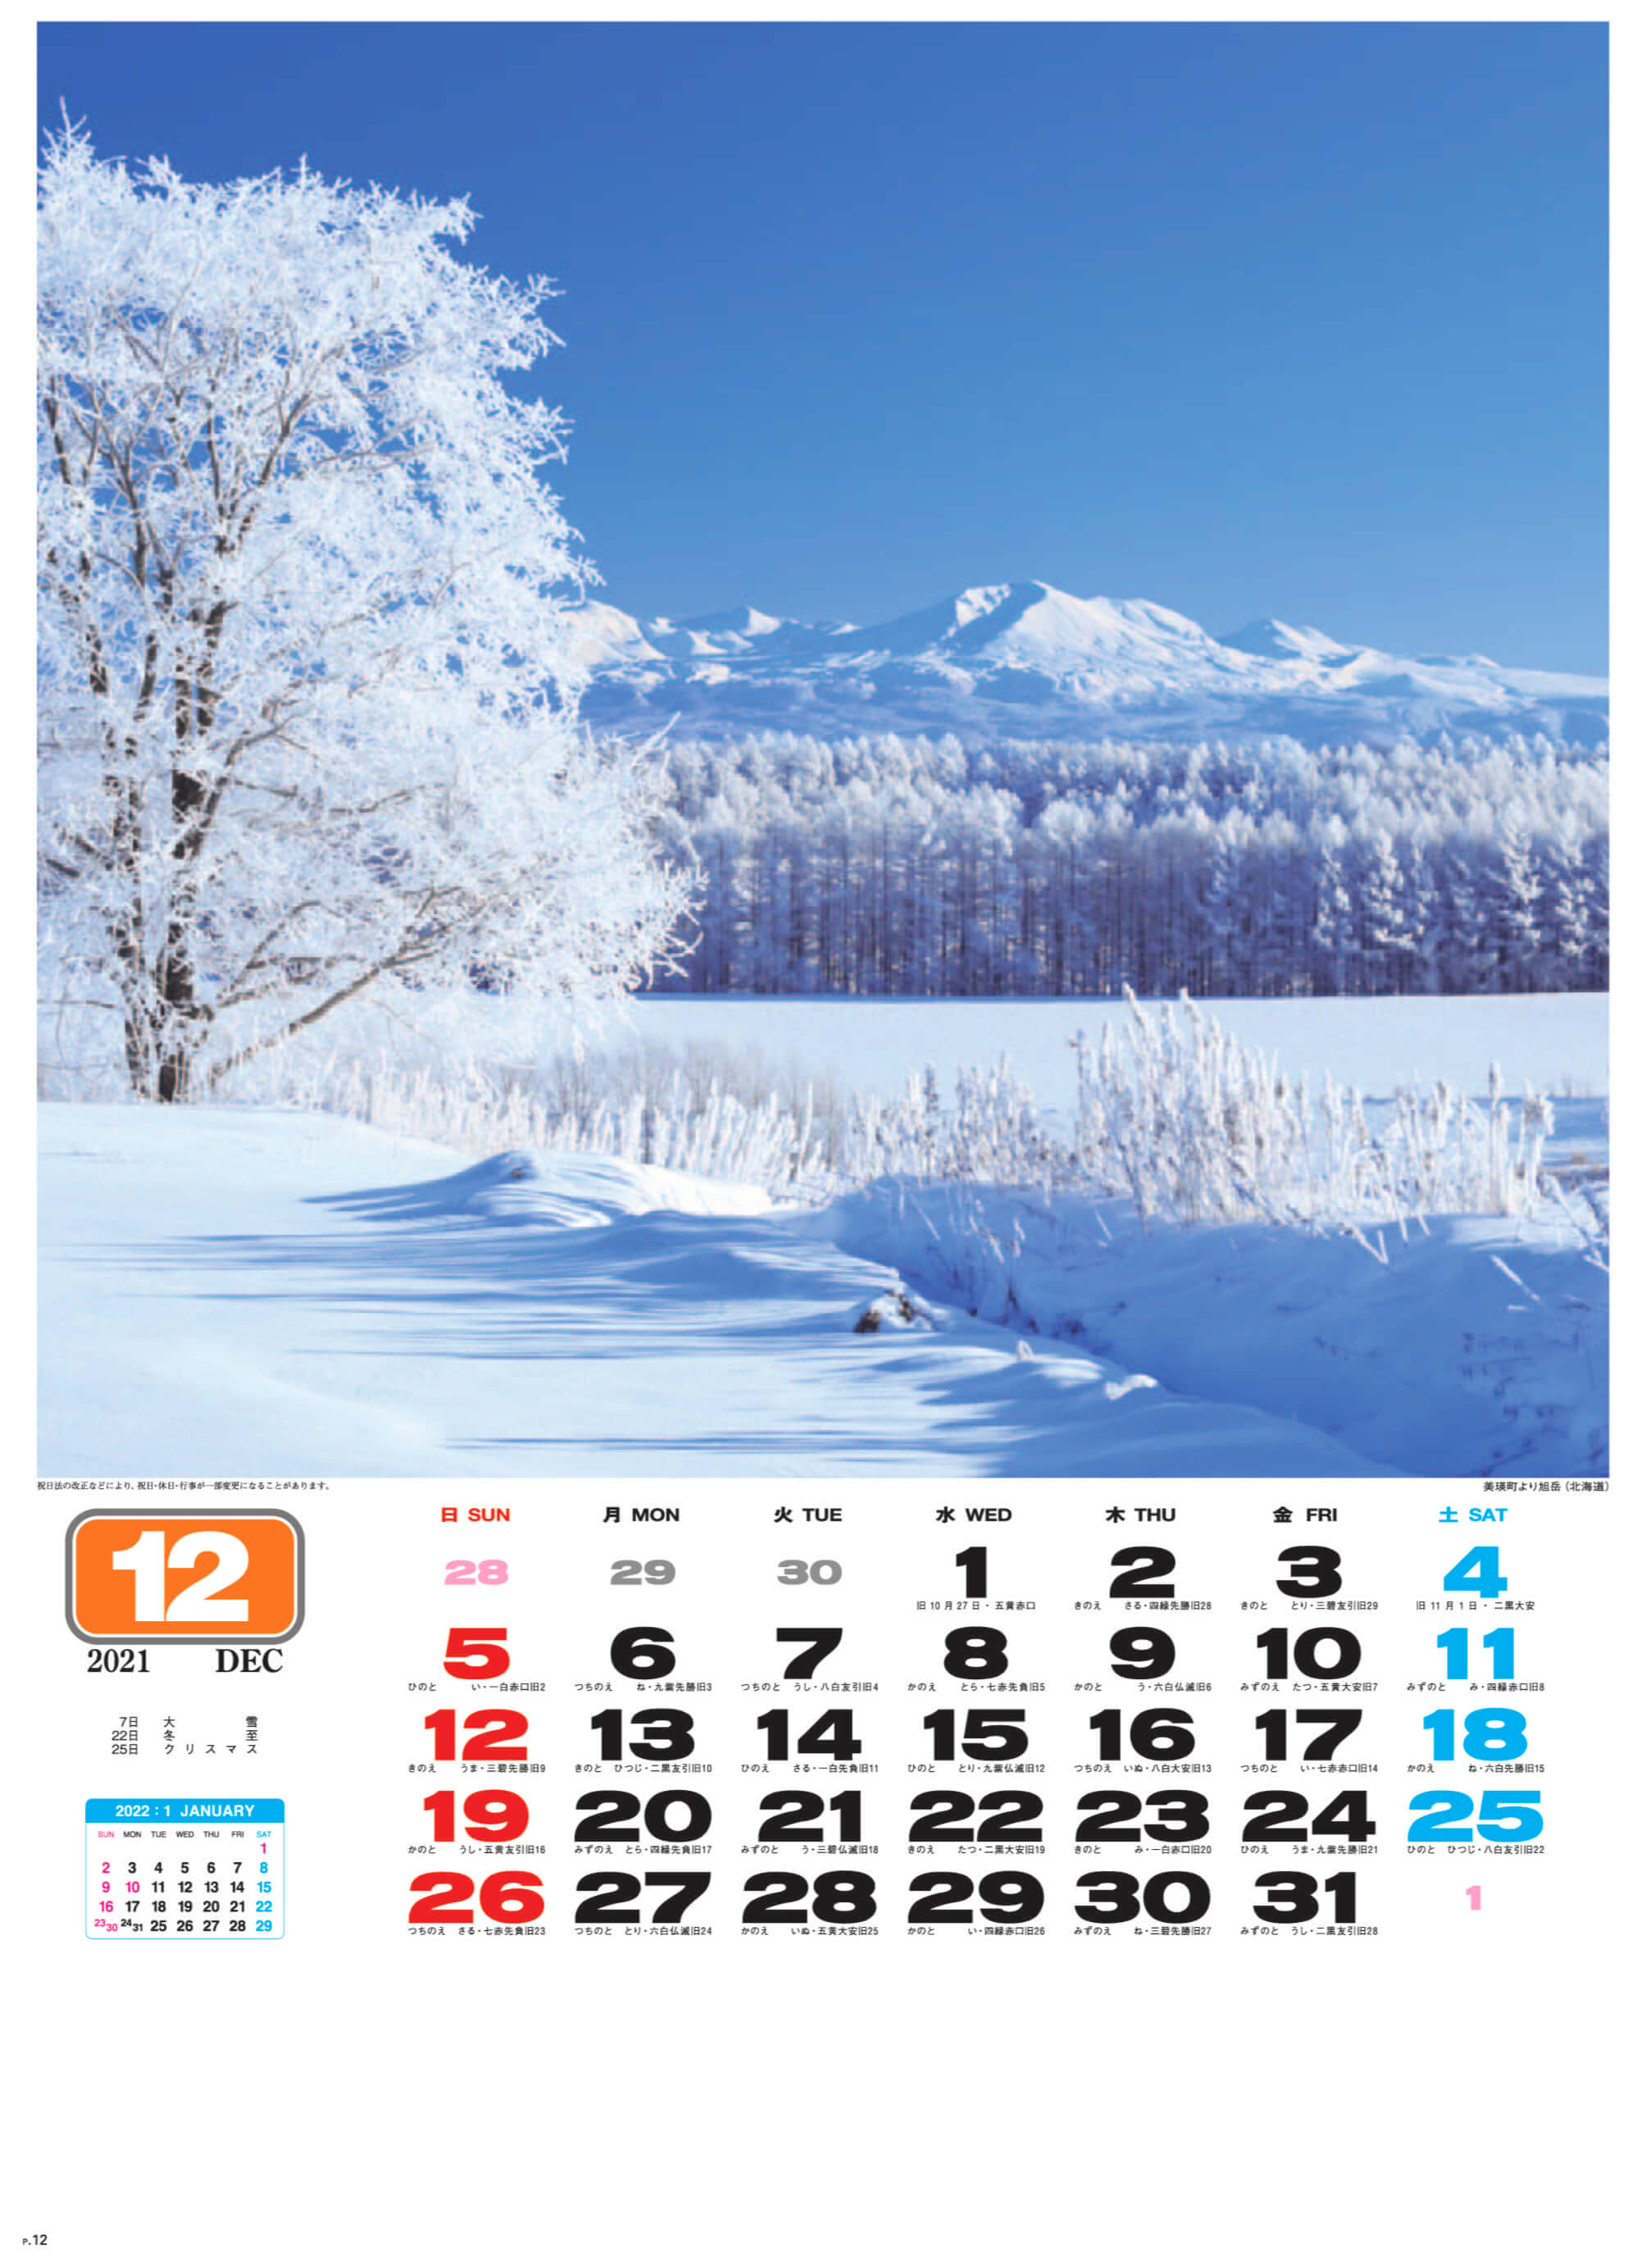 美瑛町より旭岳(北海道) 美しき日本 2021年カレンダーの画像